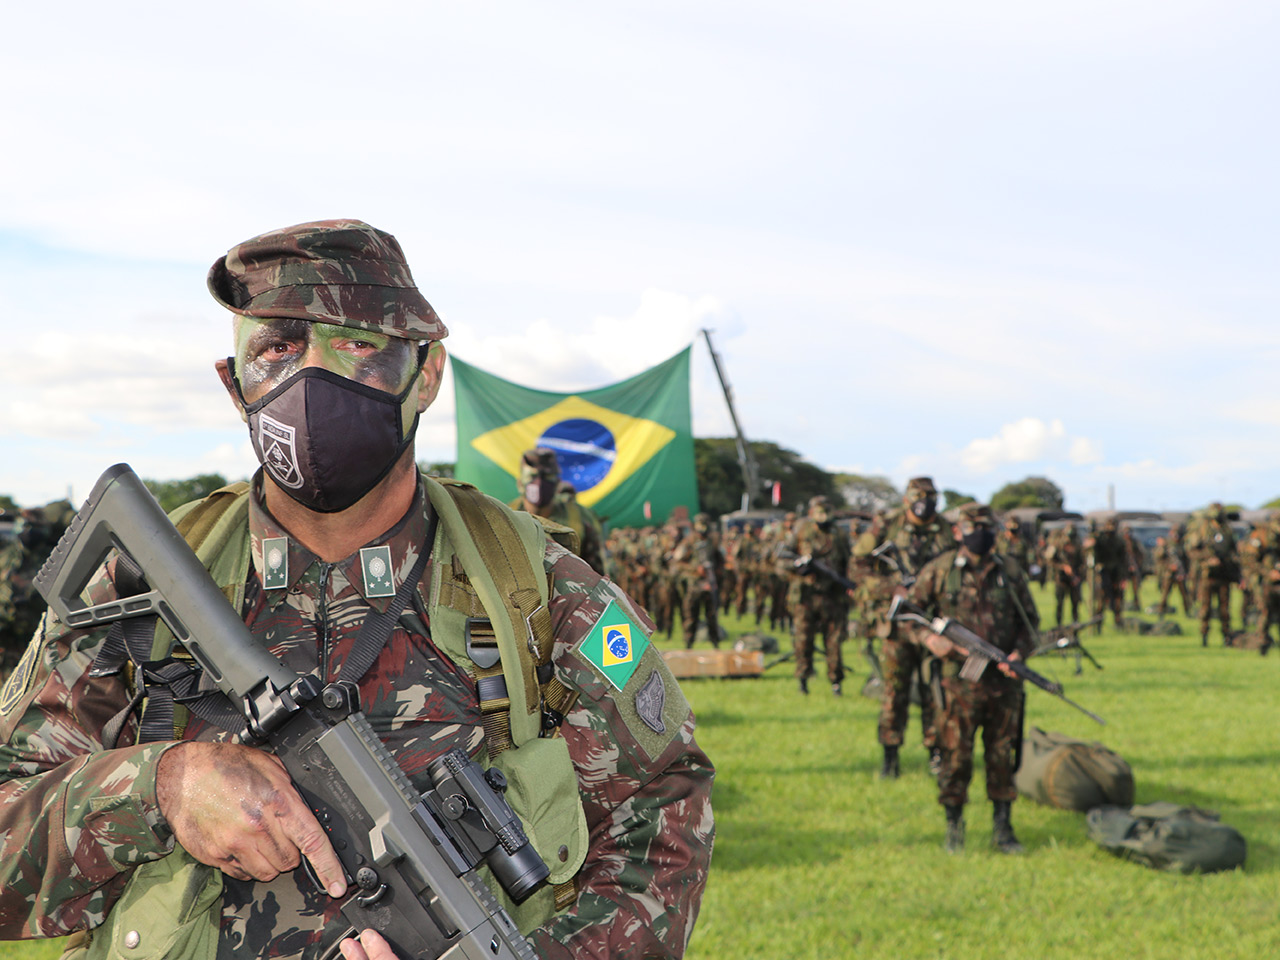 Id de farda da infantaria do exército brasileiro. Aproveite e